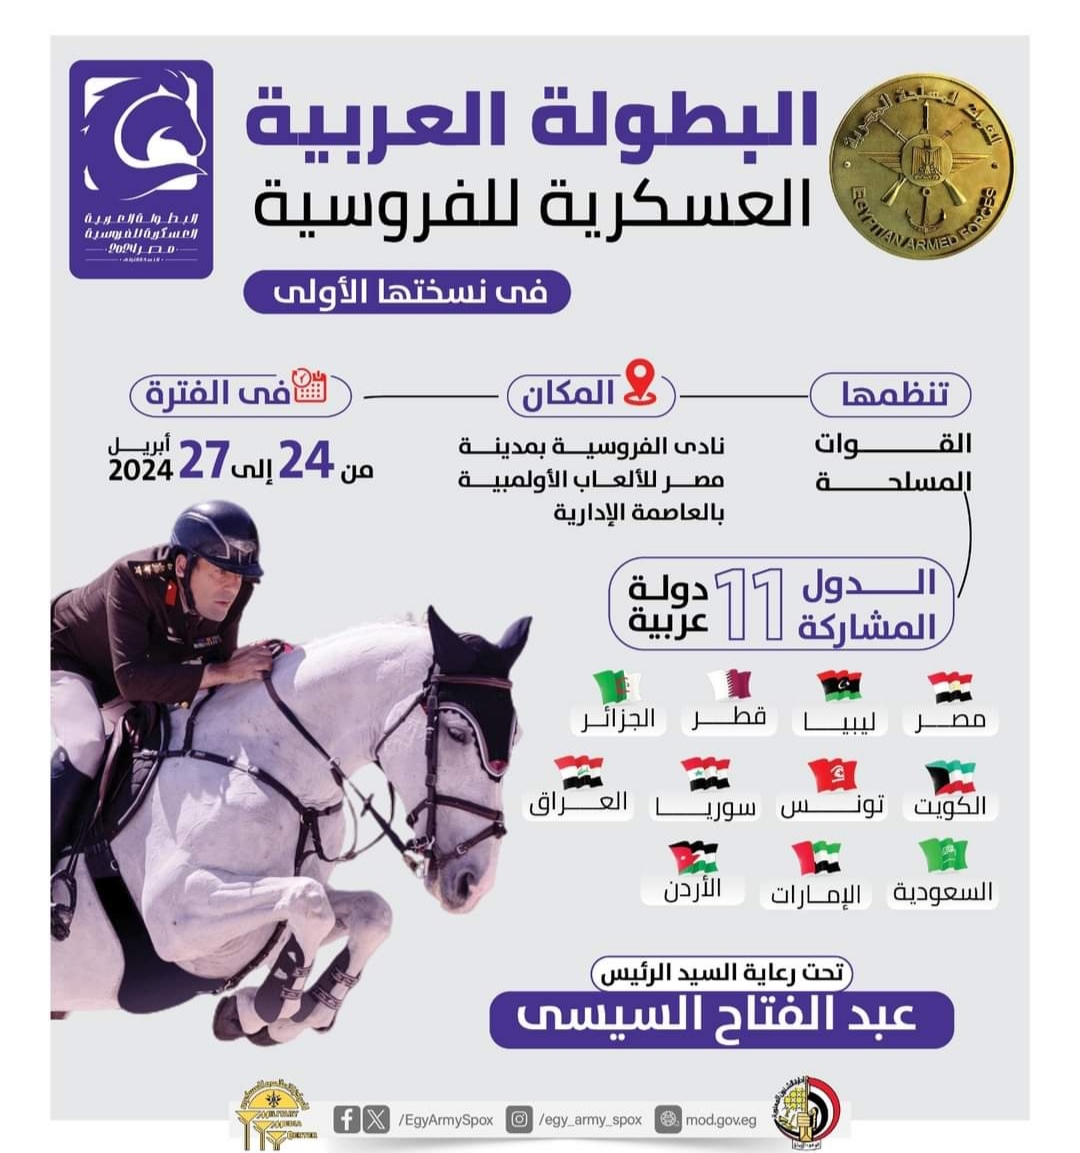 البطولة العربية العسكرية للفروسية في مصر بمشاركة 10 دول عربية